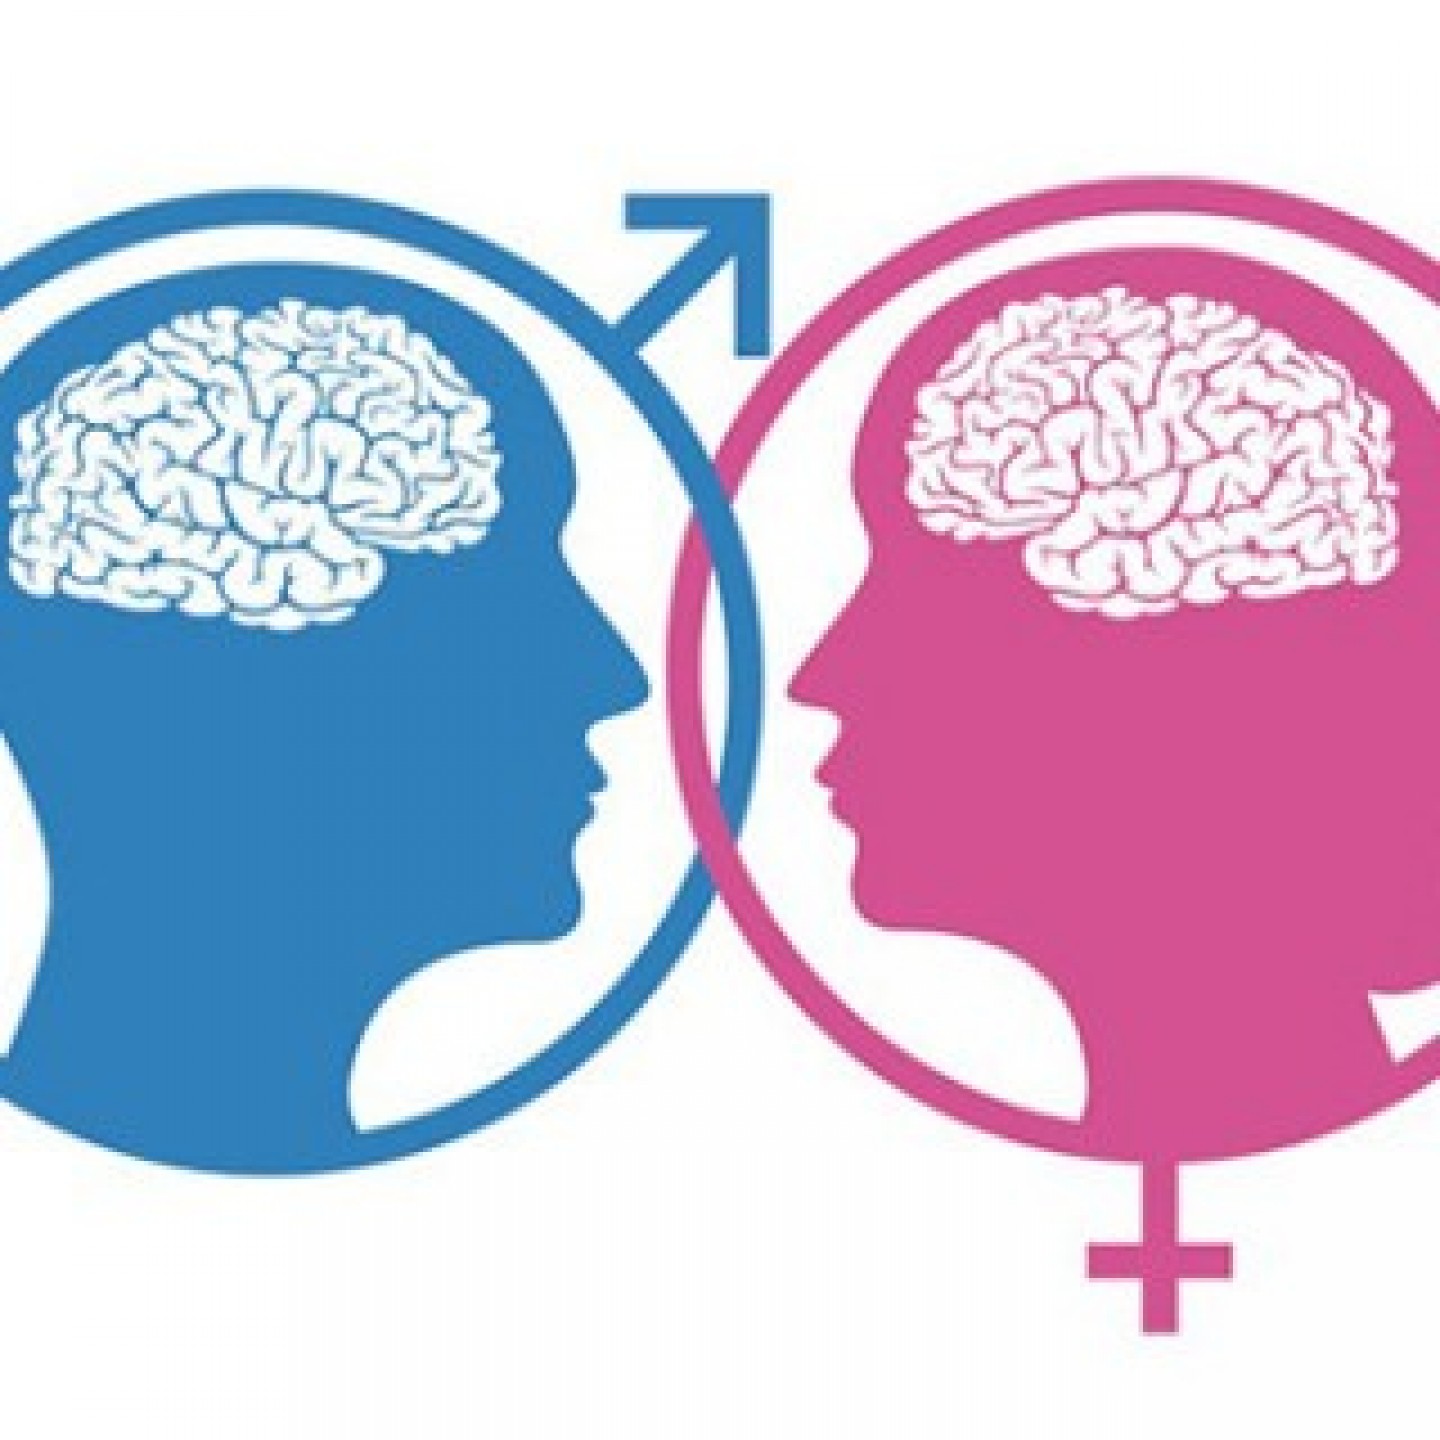 Ženski i muški mozak – postoje li razlike?